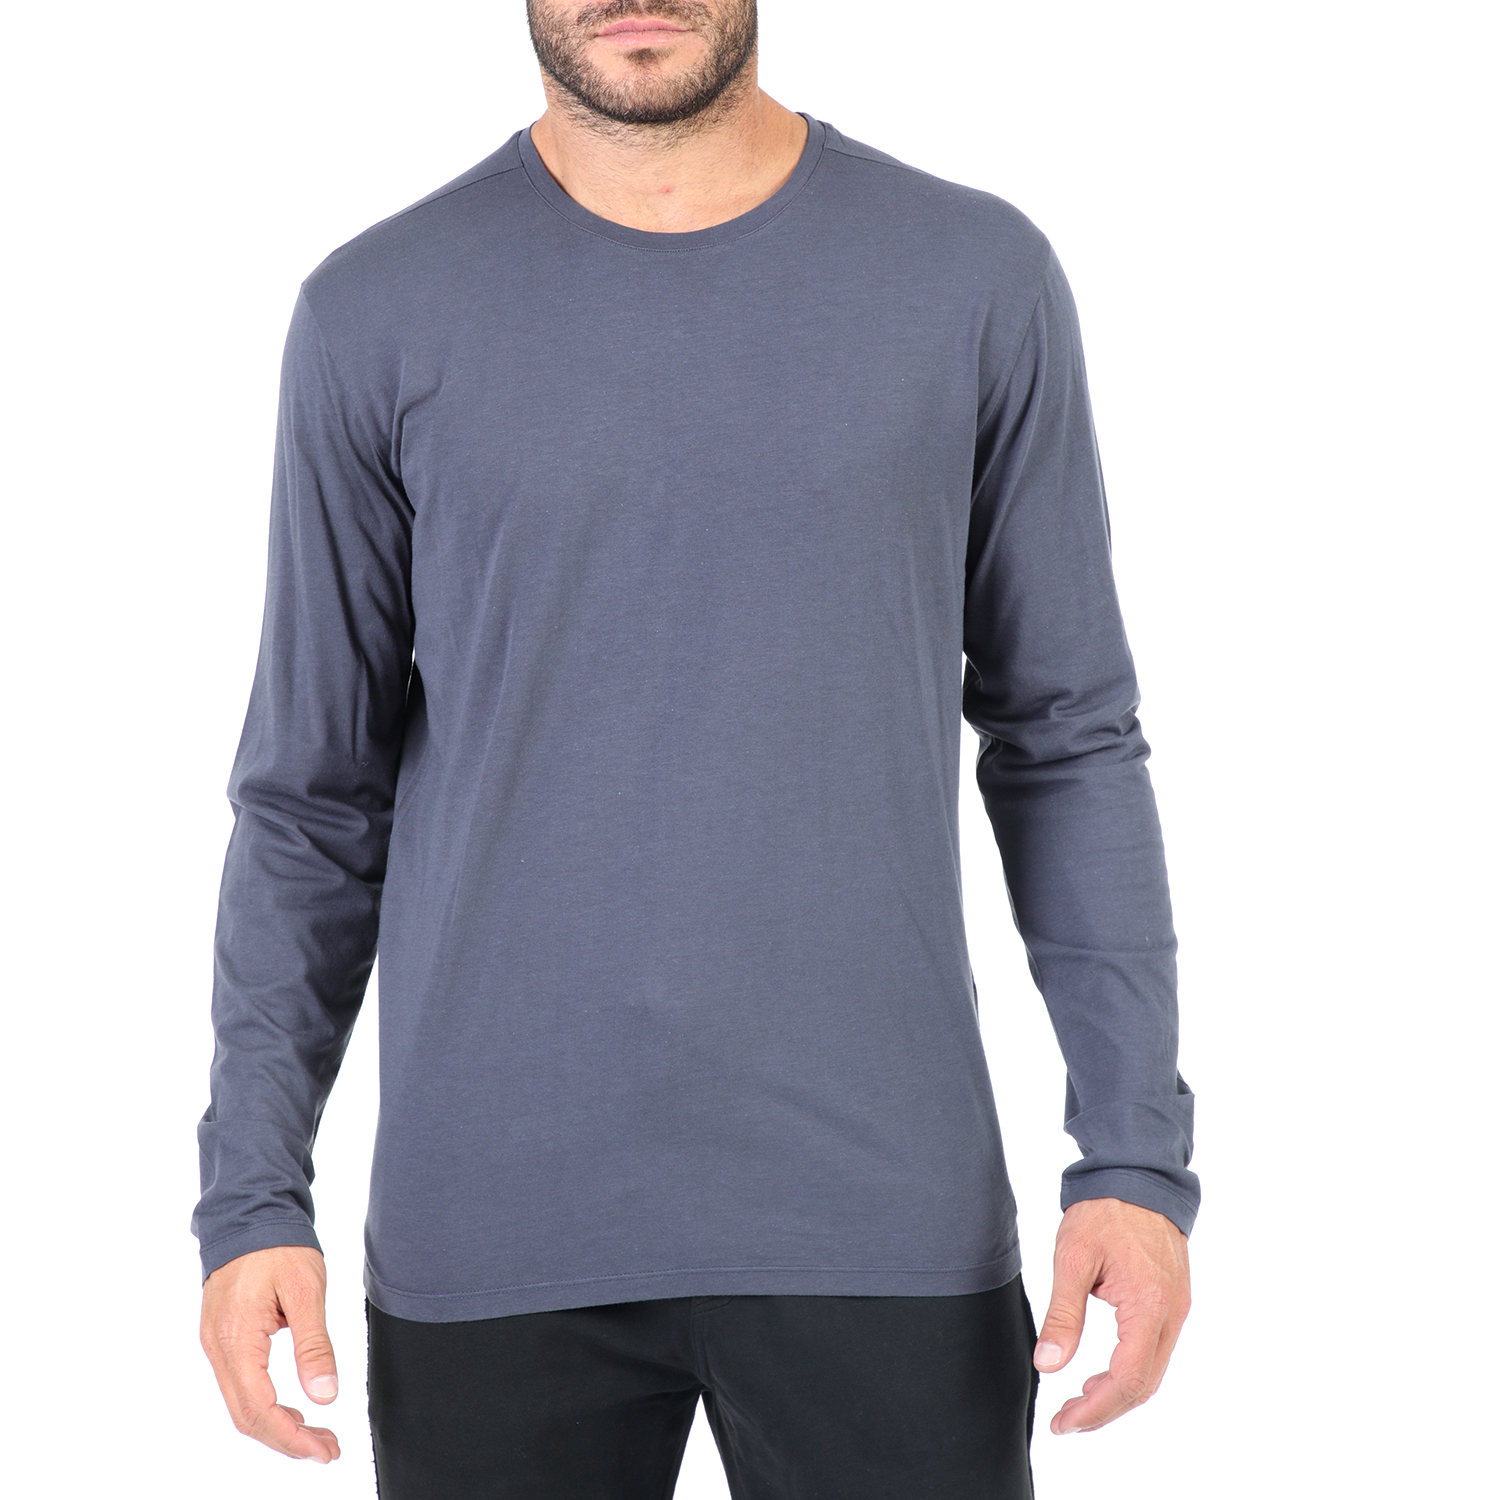 Ανδρικά/Ρούχα/Μπλούζες/Μακρυμάνικες DIRTY LAUNDRY - Ανδρική μακρυμάνικη μπλούζα DIRTY LAUNDRY μπλε